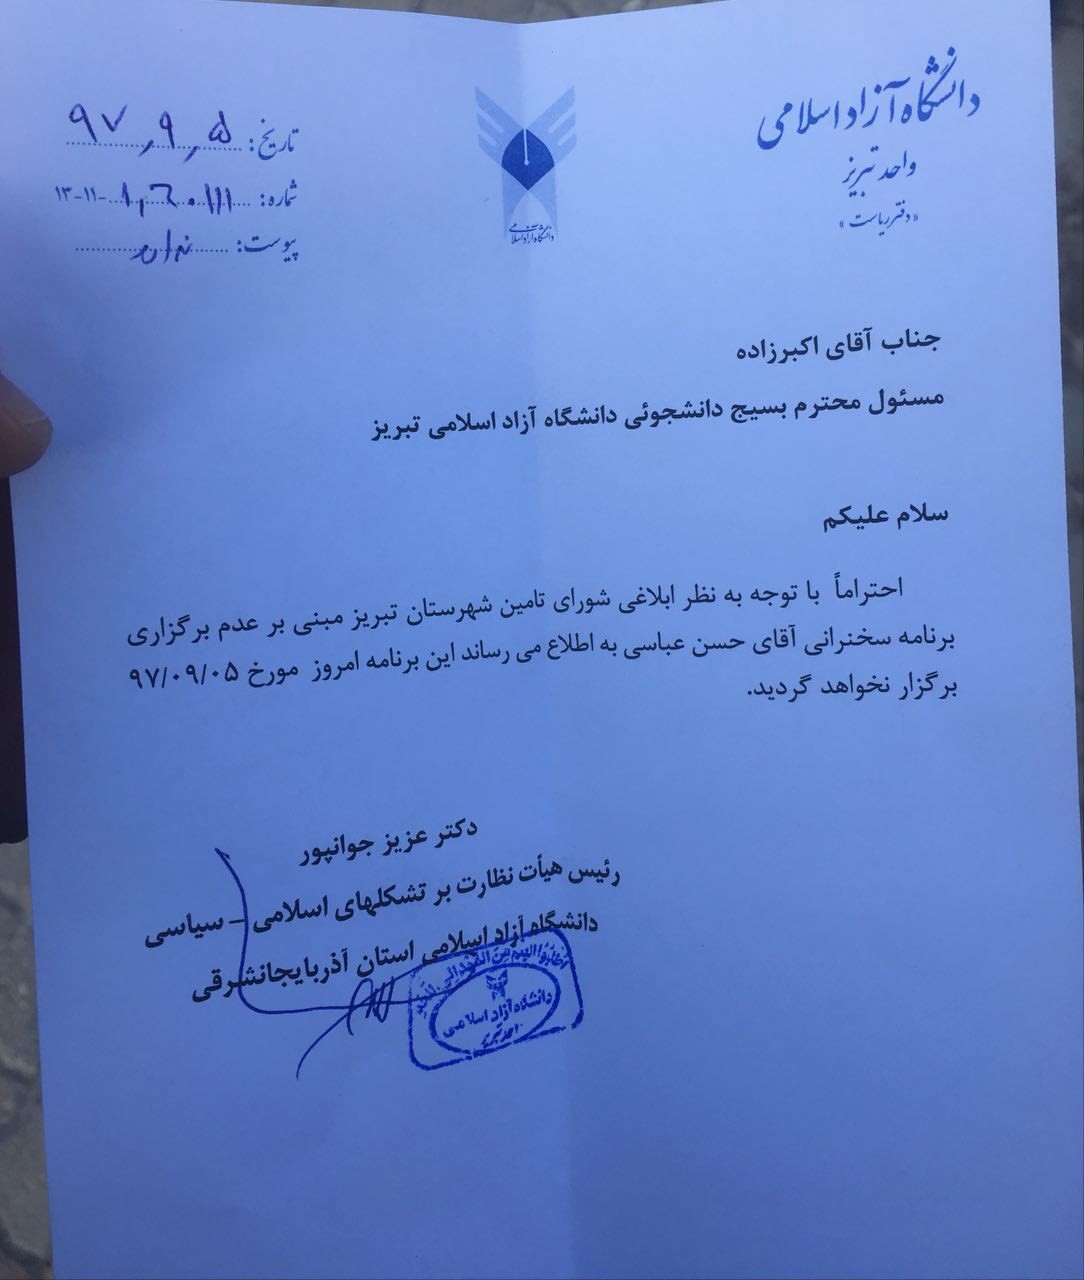 سخنرانی حسن عباسی در دانشگاه آزاد تبریز نیز لغو شد+ سند